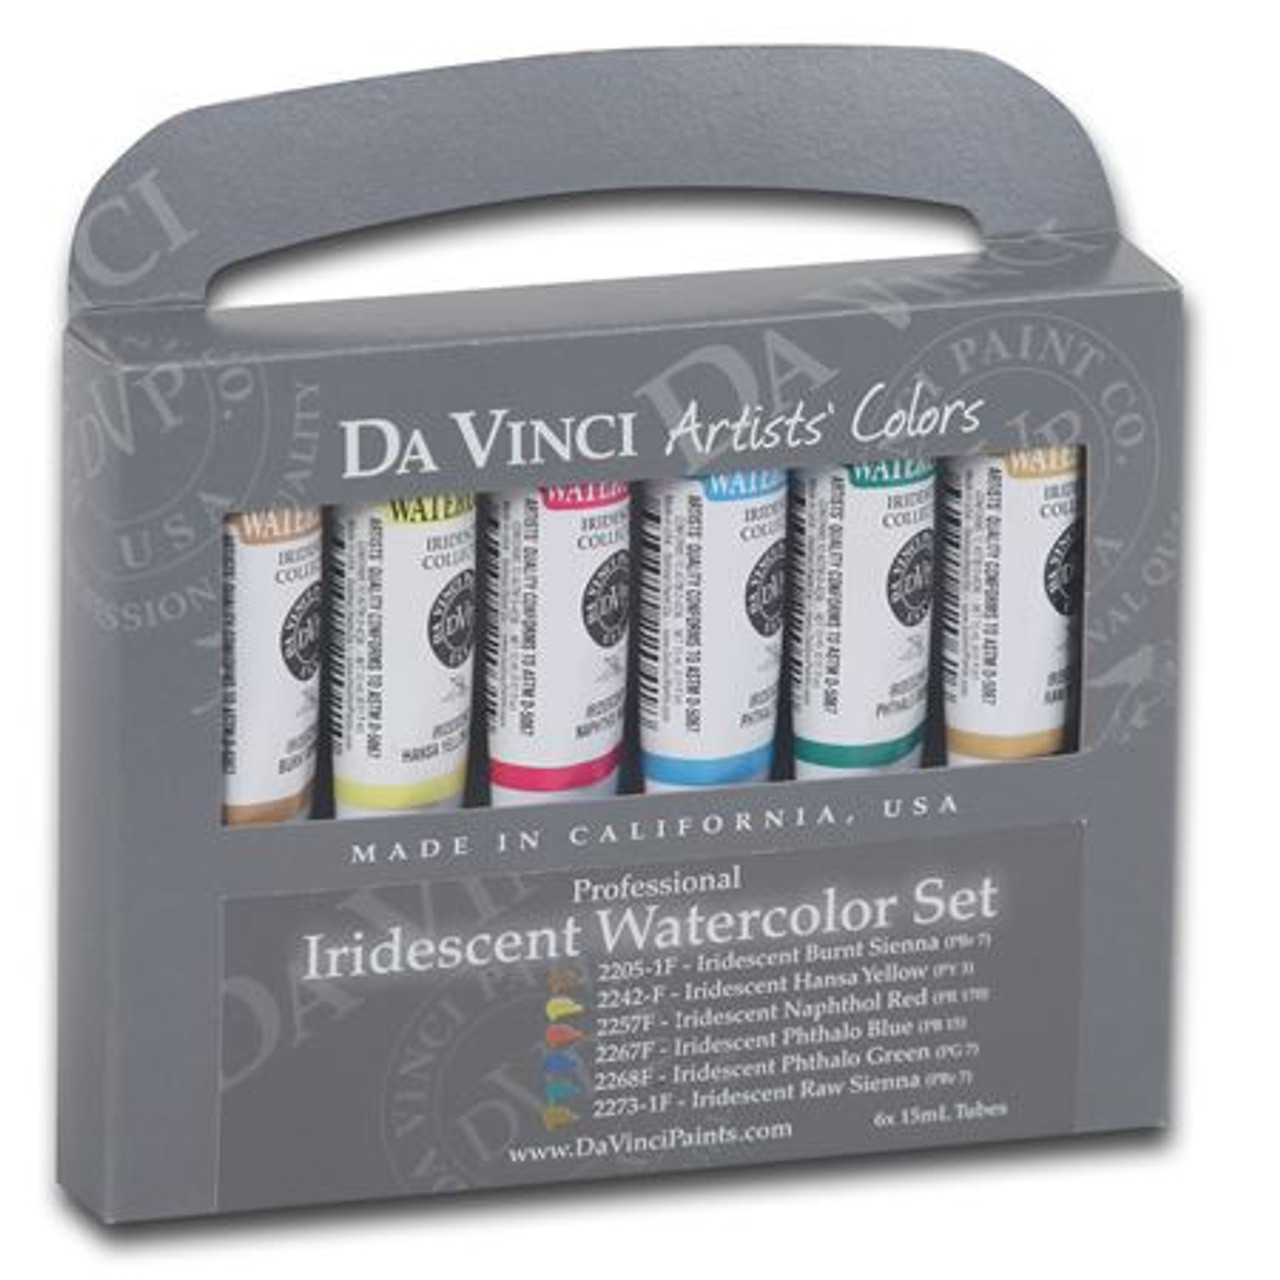 Watercolor Iridescent Set - Da Vinci Paint Co.